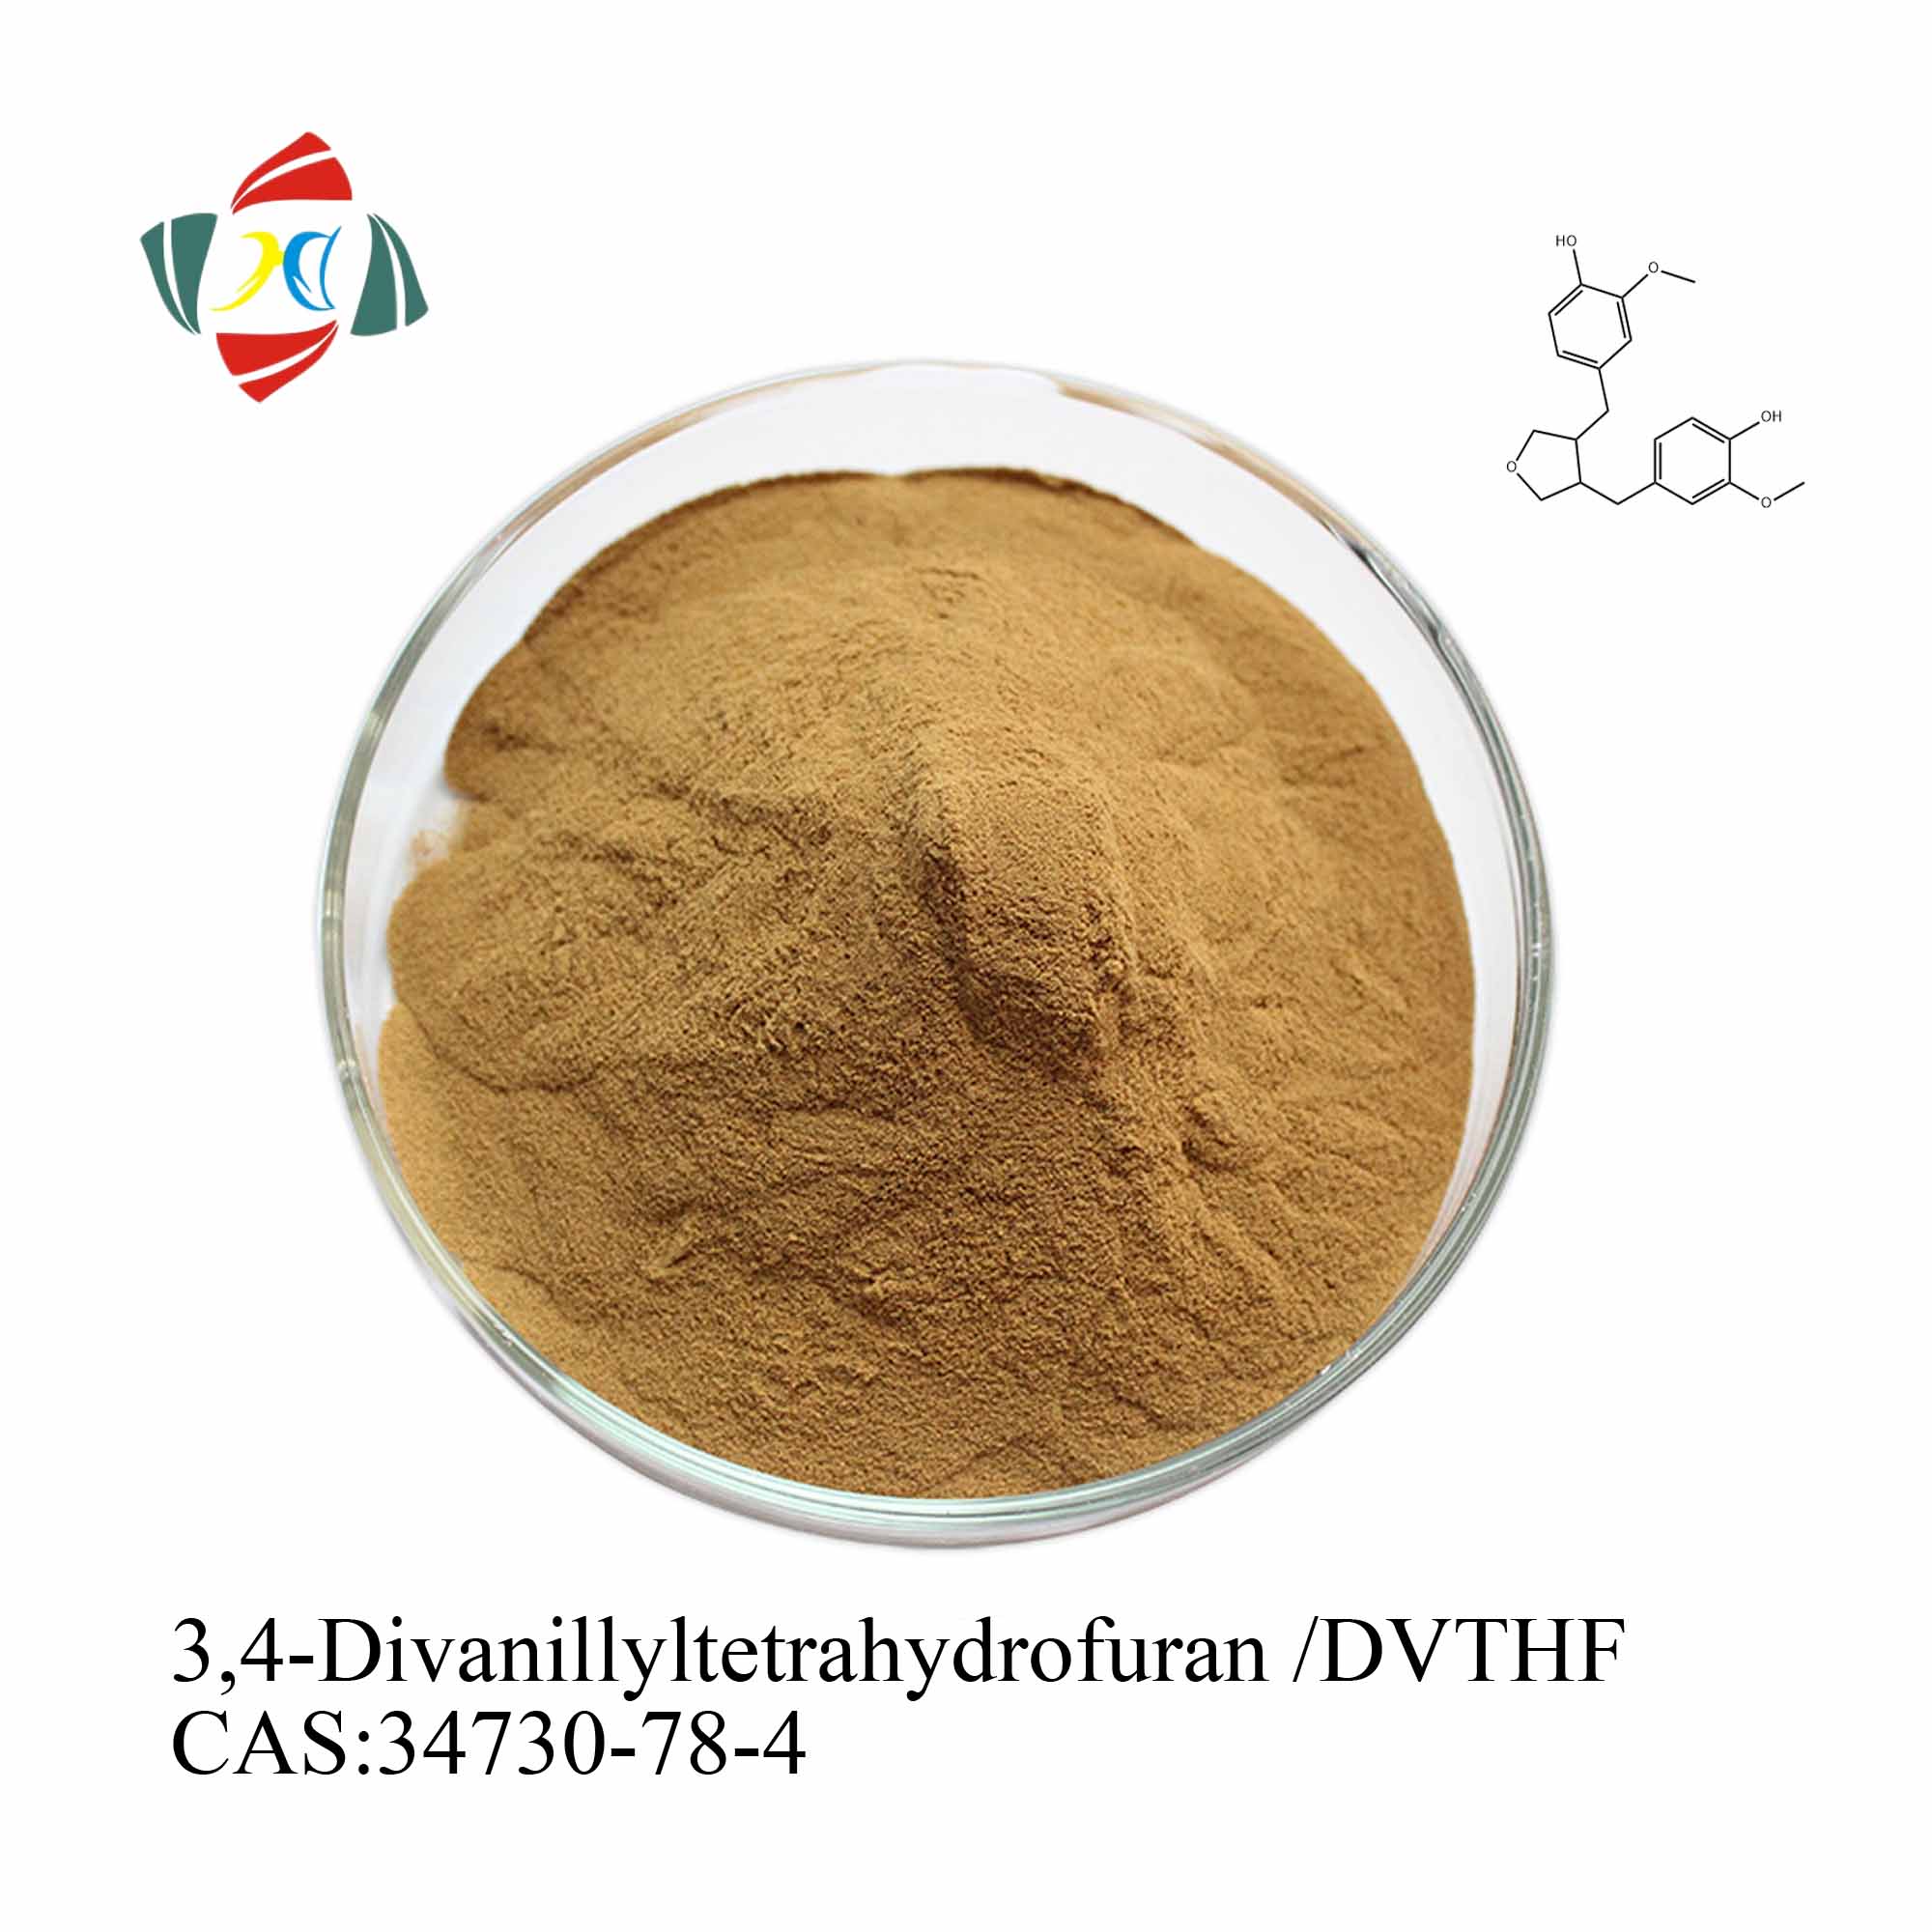 Acheter Extrait de racine d'ortie de haute qualité 45% 6,7-Dihydroxybergamottin/DHB 95% 3,4-Divanillyltetrahydrofuran /DVTHF,Extrait de racine d'ortie de haute qualité 45% 6,7-Dihydroxybergamottin/DHB 95% 3,4-Divanillyltetrahydrofuran /DVTHF Prix,Extrait de racine d'ortie de haute qualité 45% 6,7-Dihydroxybergamottin/DHB 95% 3,4-Divanillyltetrahydrofuran /DVTHF Marques,Extrait de racine d'ortie de haute qualité 45% 6,7-Dihydroxybergamottin/DHB 95% 3,4-Divanillyltetrahydrofuran /DVTHF Fabricant,Extrait de racine d'ortie de haute qualité 45% 6,7-Dihydroxybergamottin/DHB 95% 3,4-Divanillyltetrahydrofuran /DVTHF Quotes,Extrait de racine d'ortie de haute qualité 45% 6,7-Dihydroxybergamottin/DHB 95% 3,4-Divanillyltetrahydrofuran /DVTHF Société,